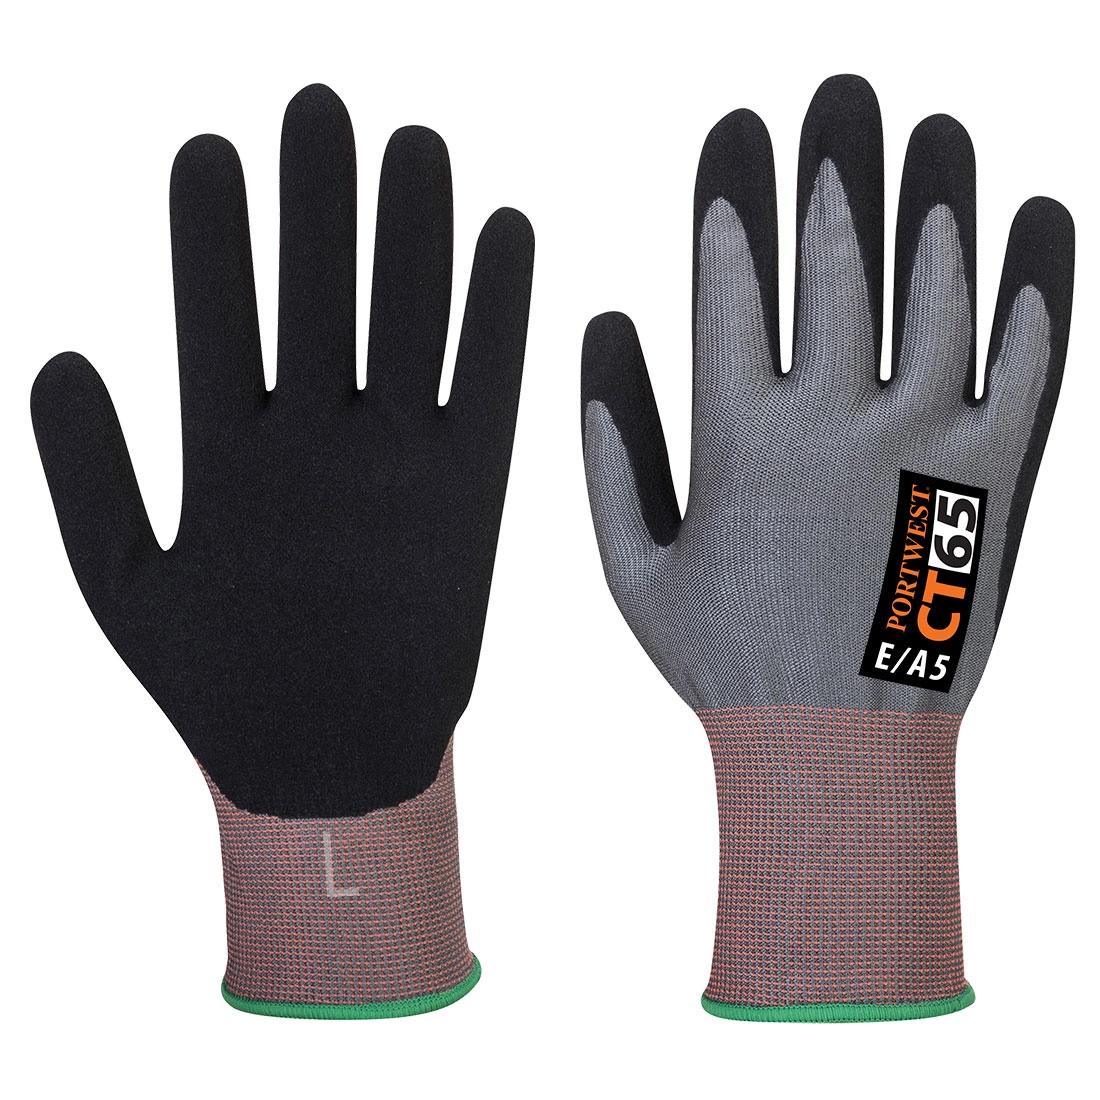 CT Cut E15 Nitrile Glove